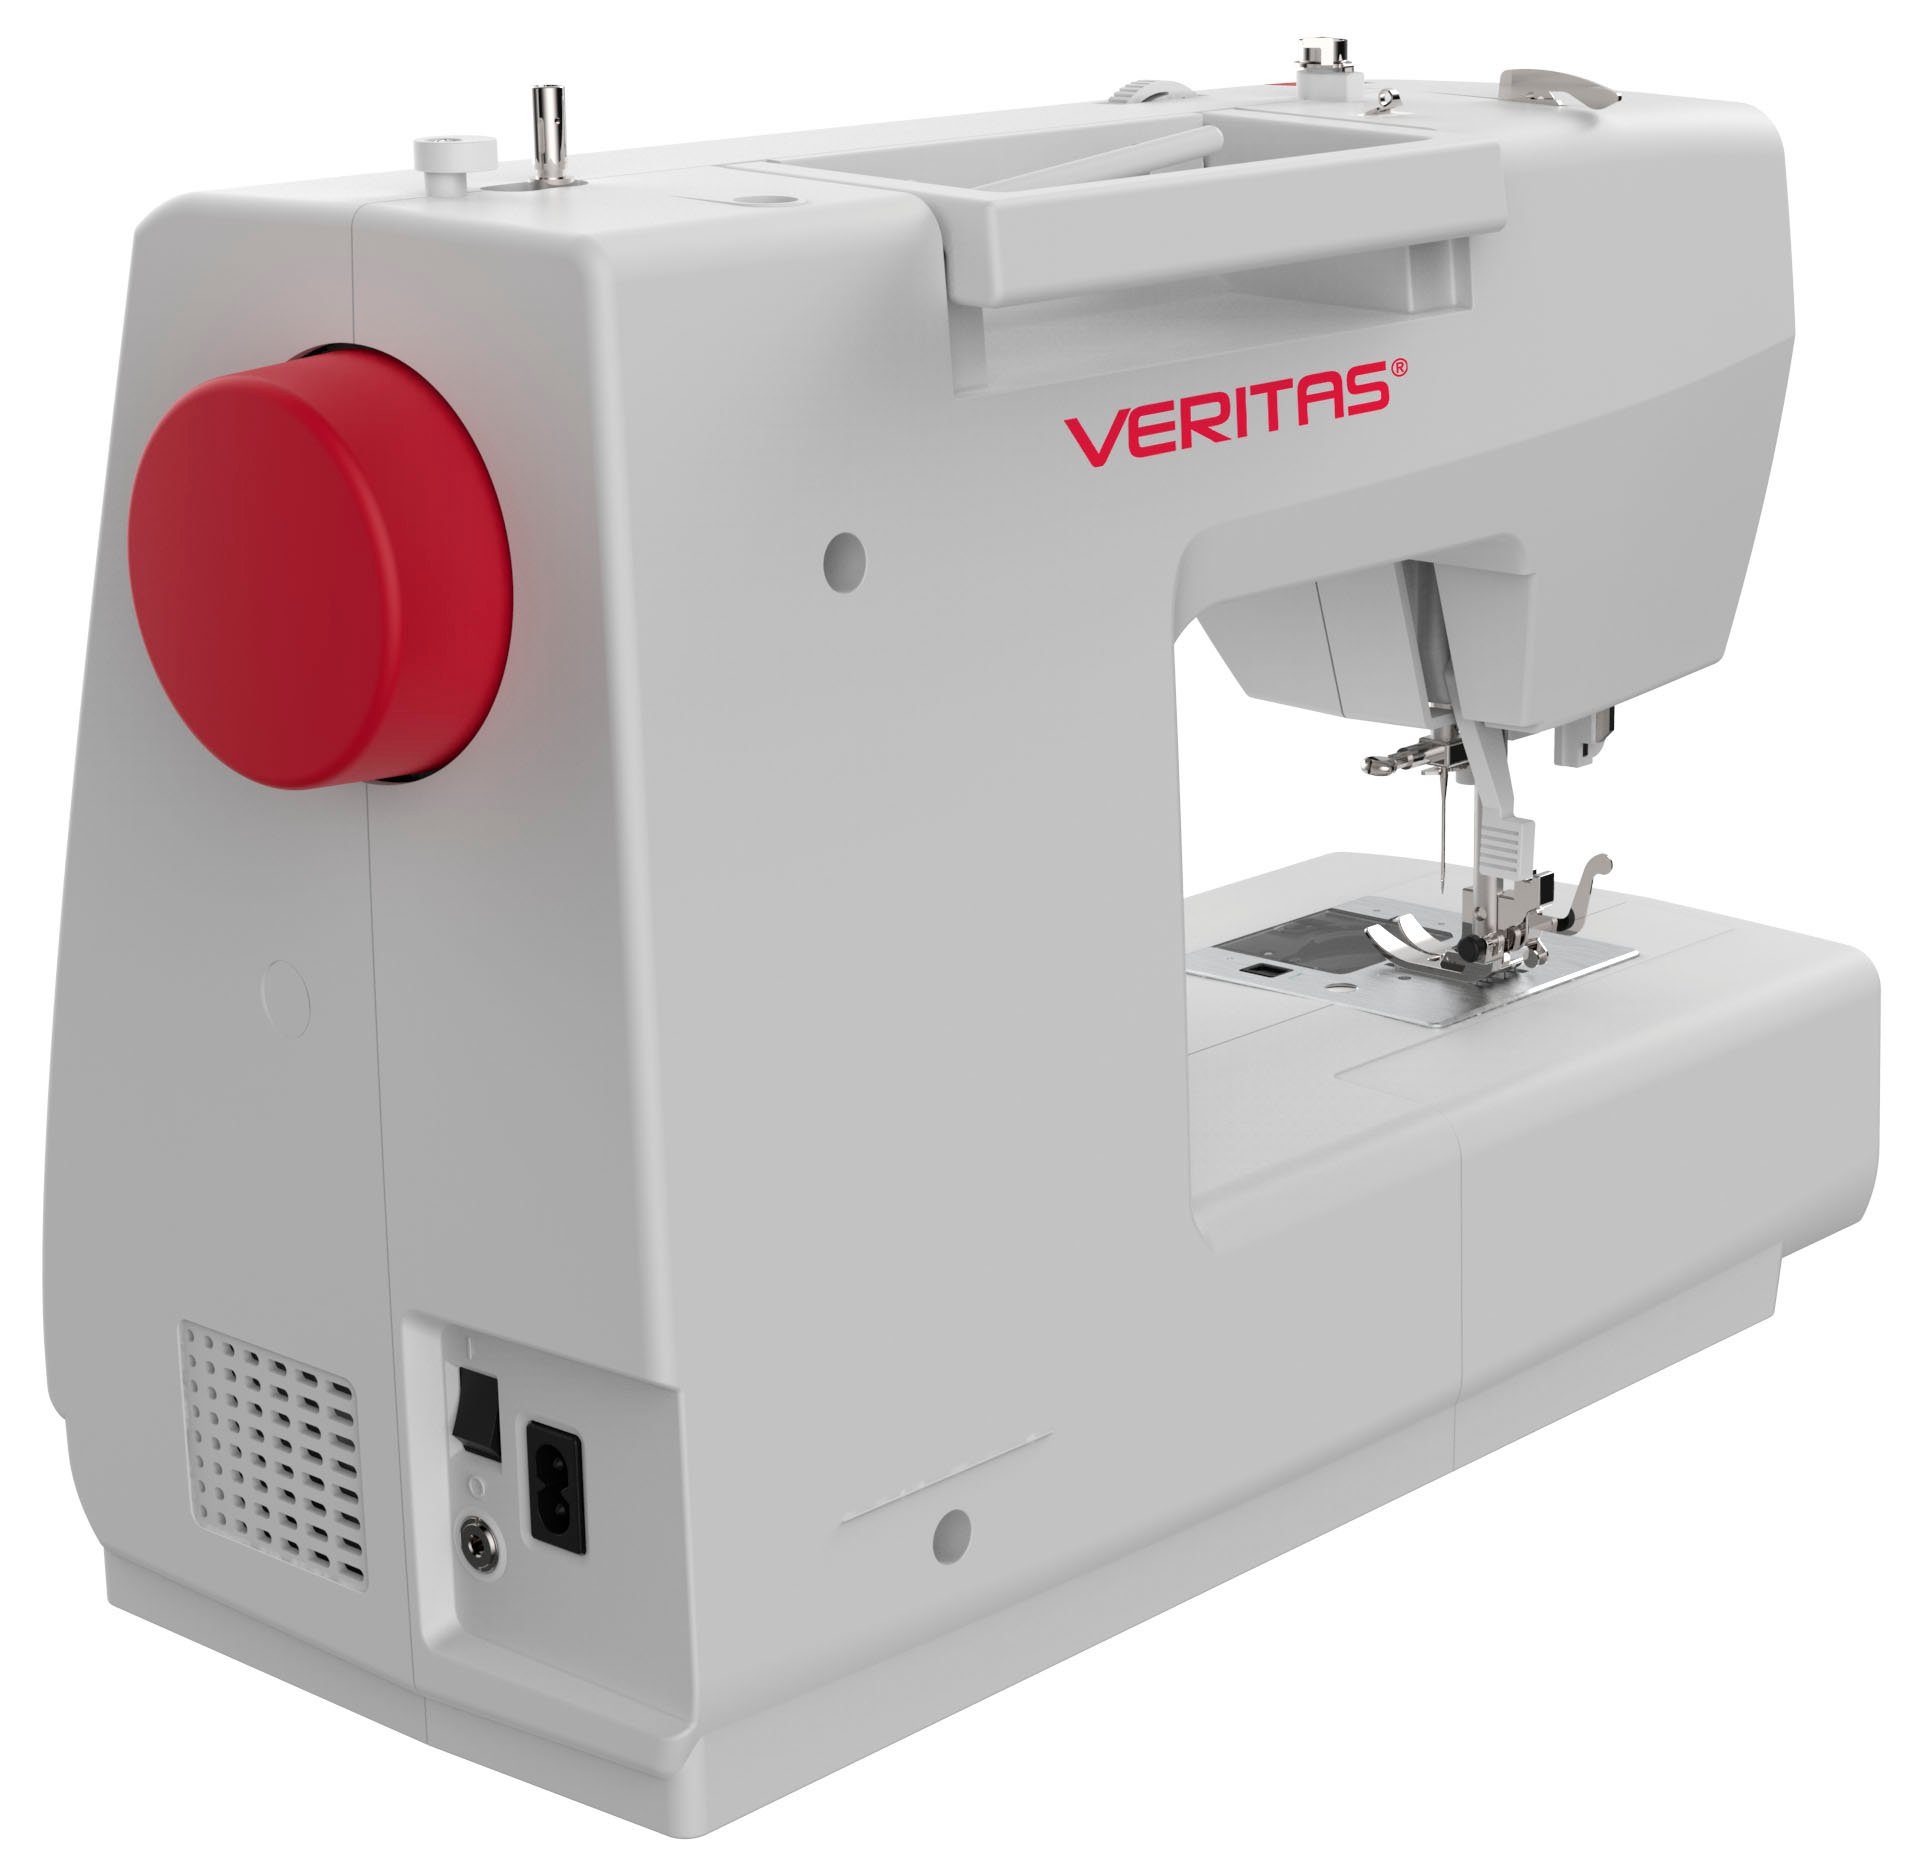 Veritas Computer-Nähmaschine Veritas Technologie 197 für Modernste Programme, Näharbeiten Claire